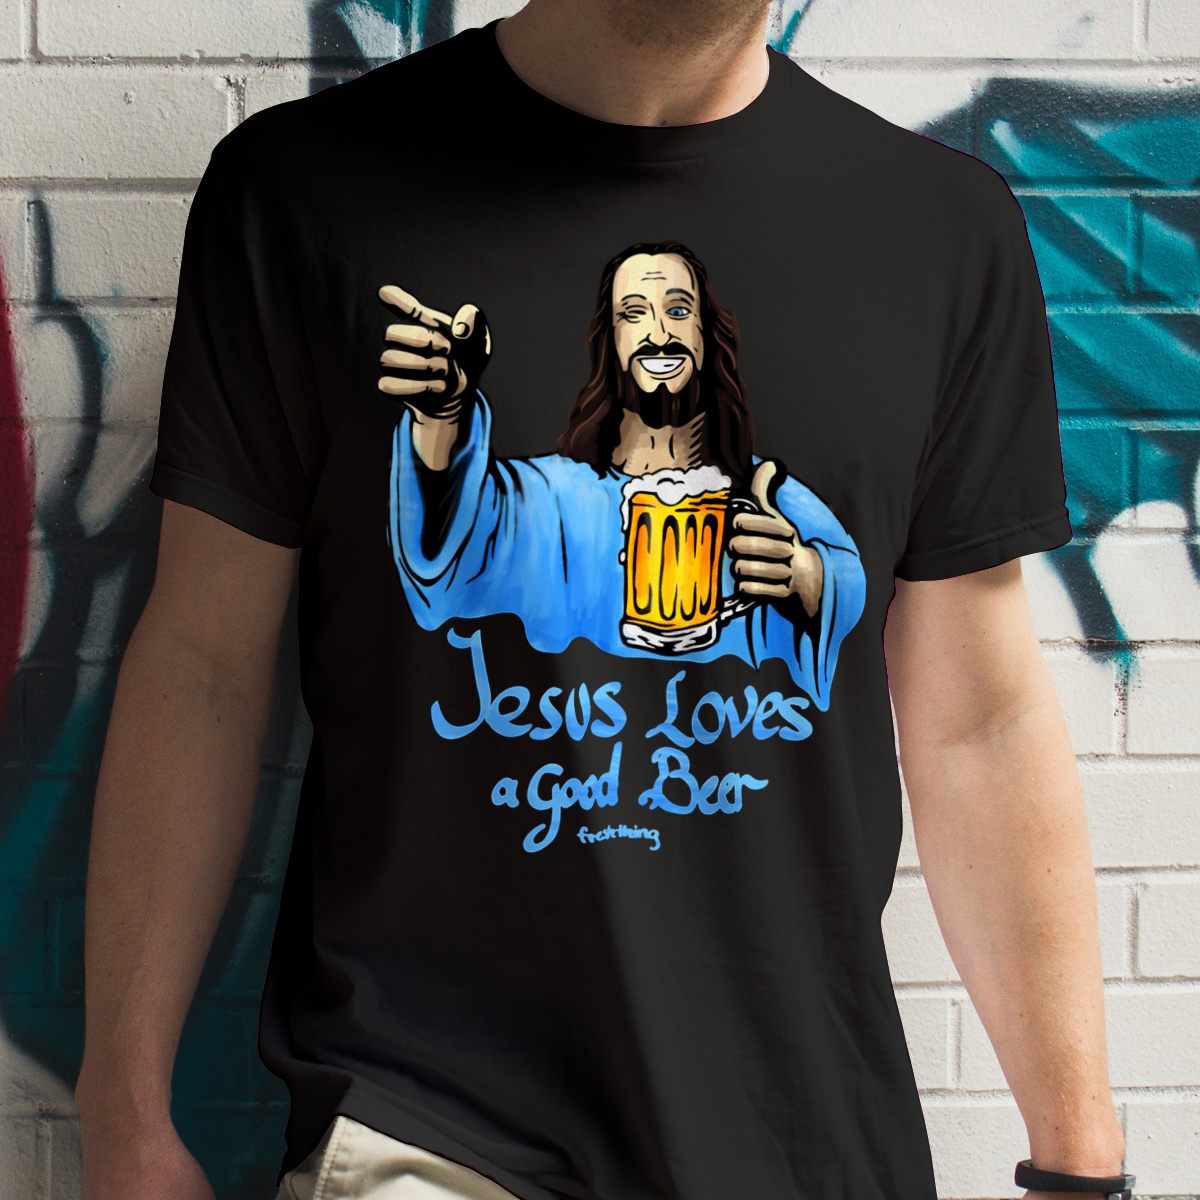 Jesus Loves Good Beer - Męska Koszulka Czarna